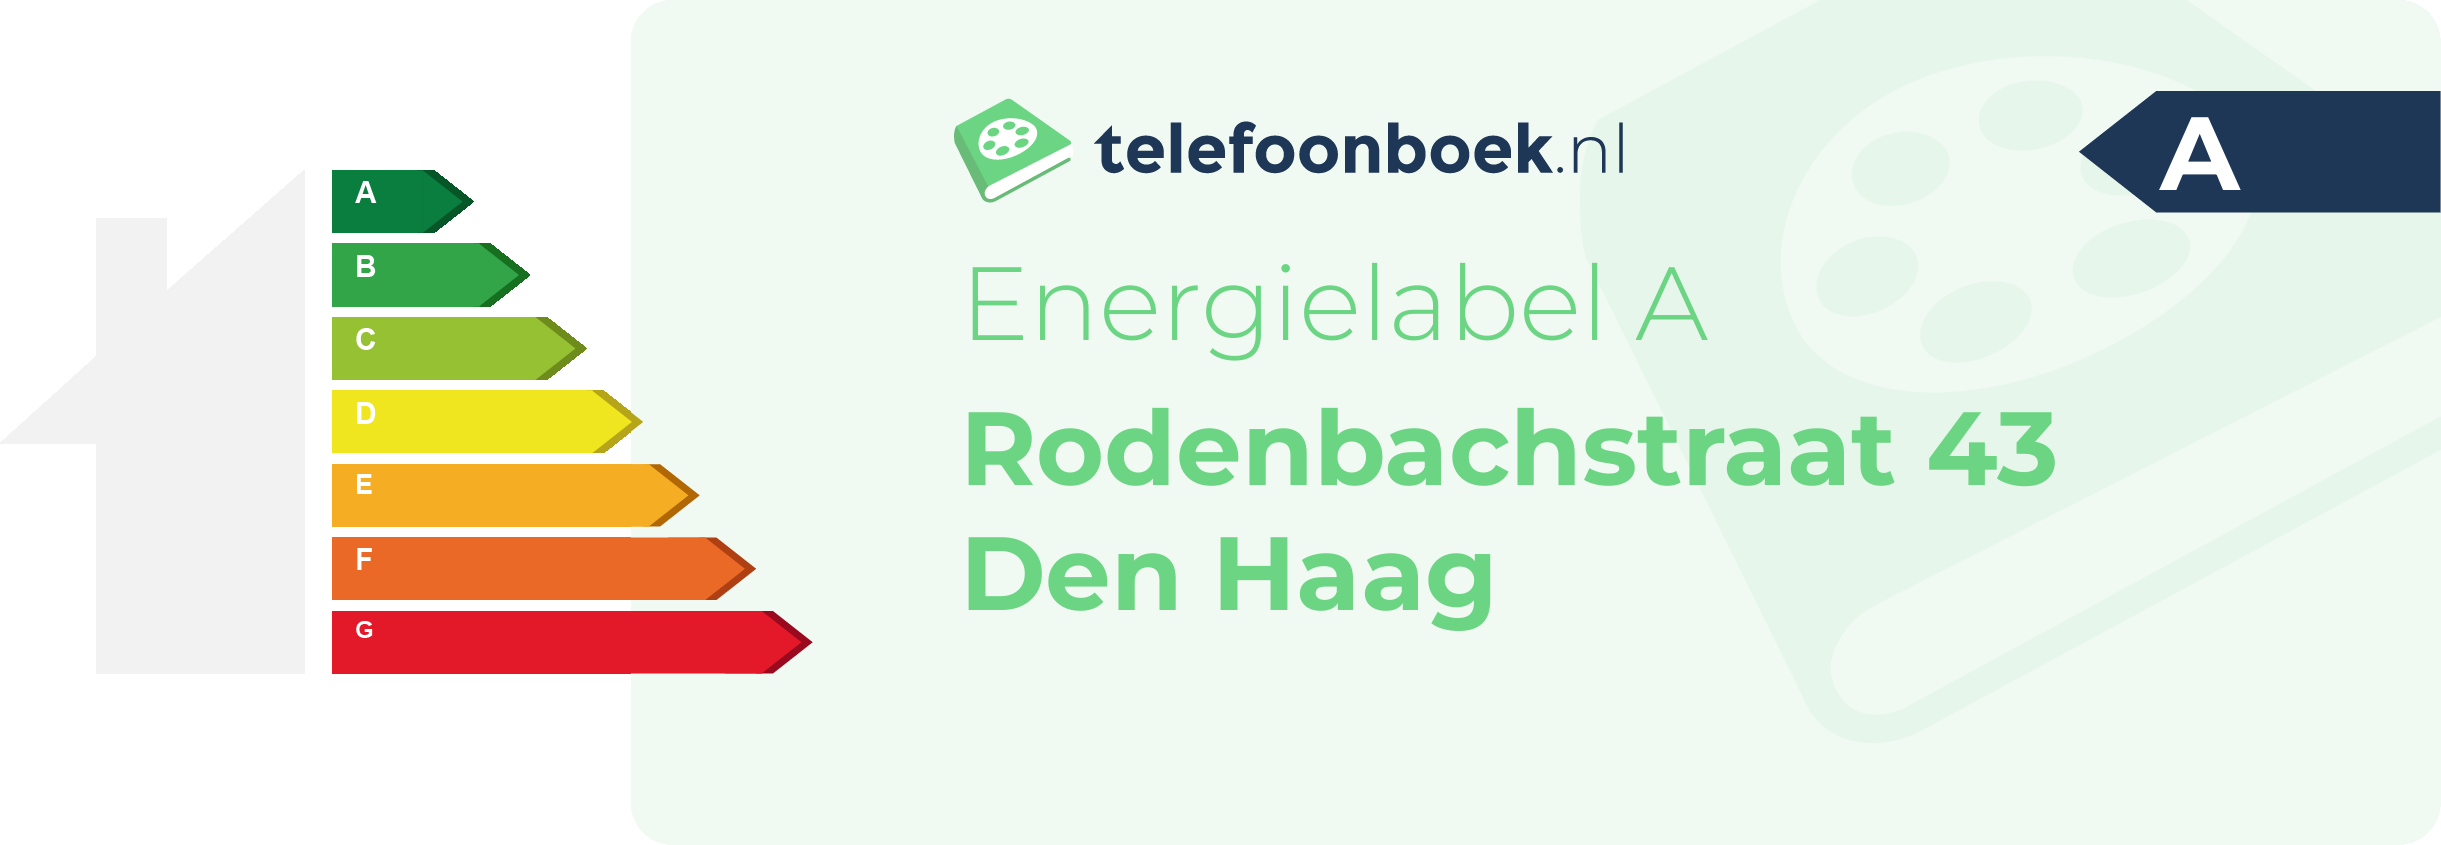 Energielabel Rodenbachstraat 43 Den Haag